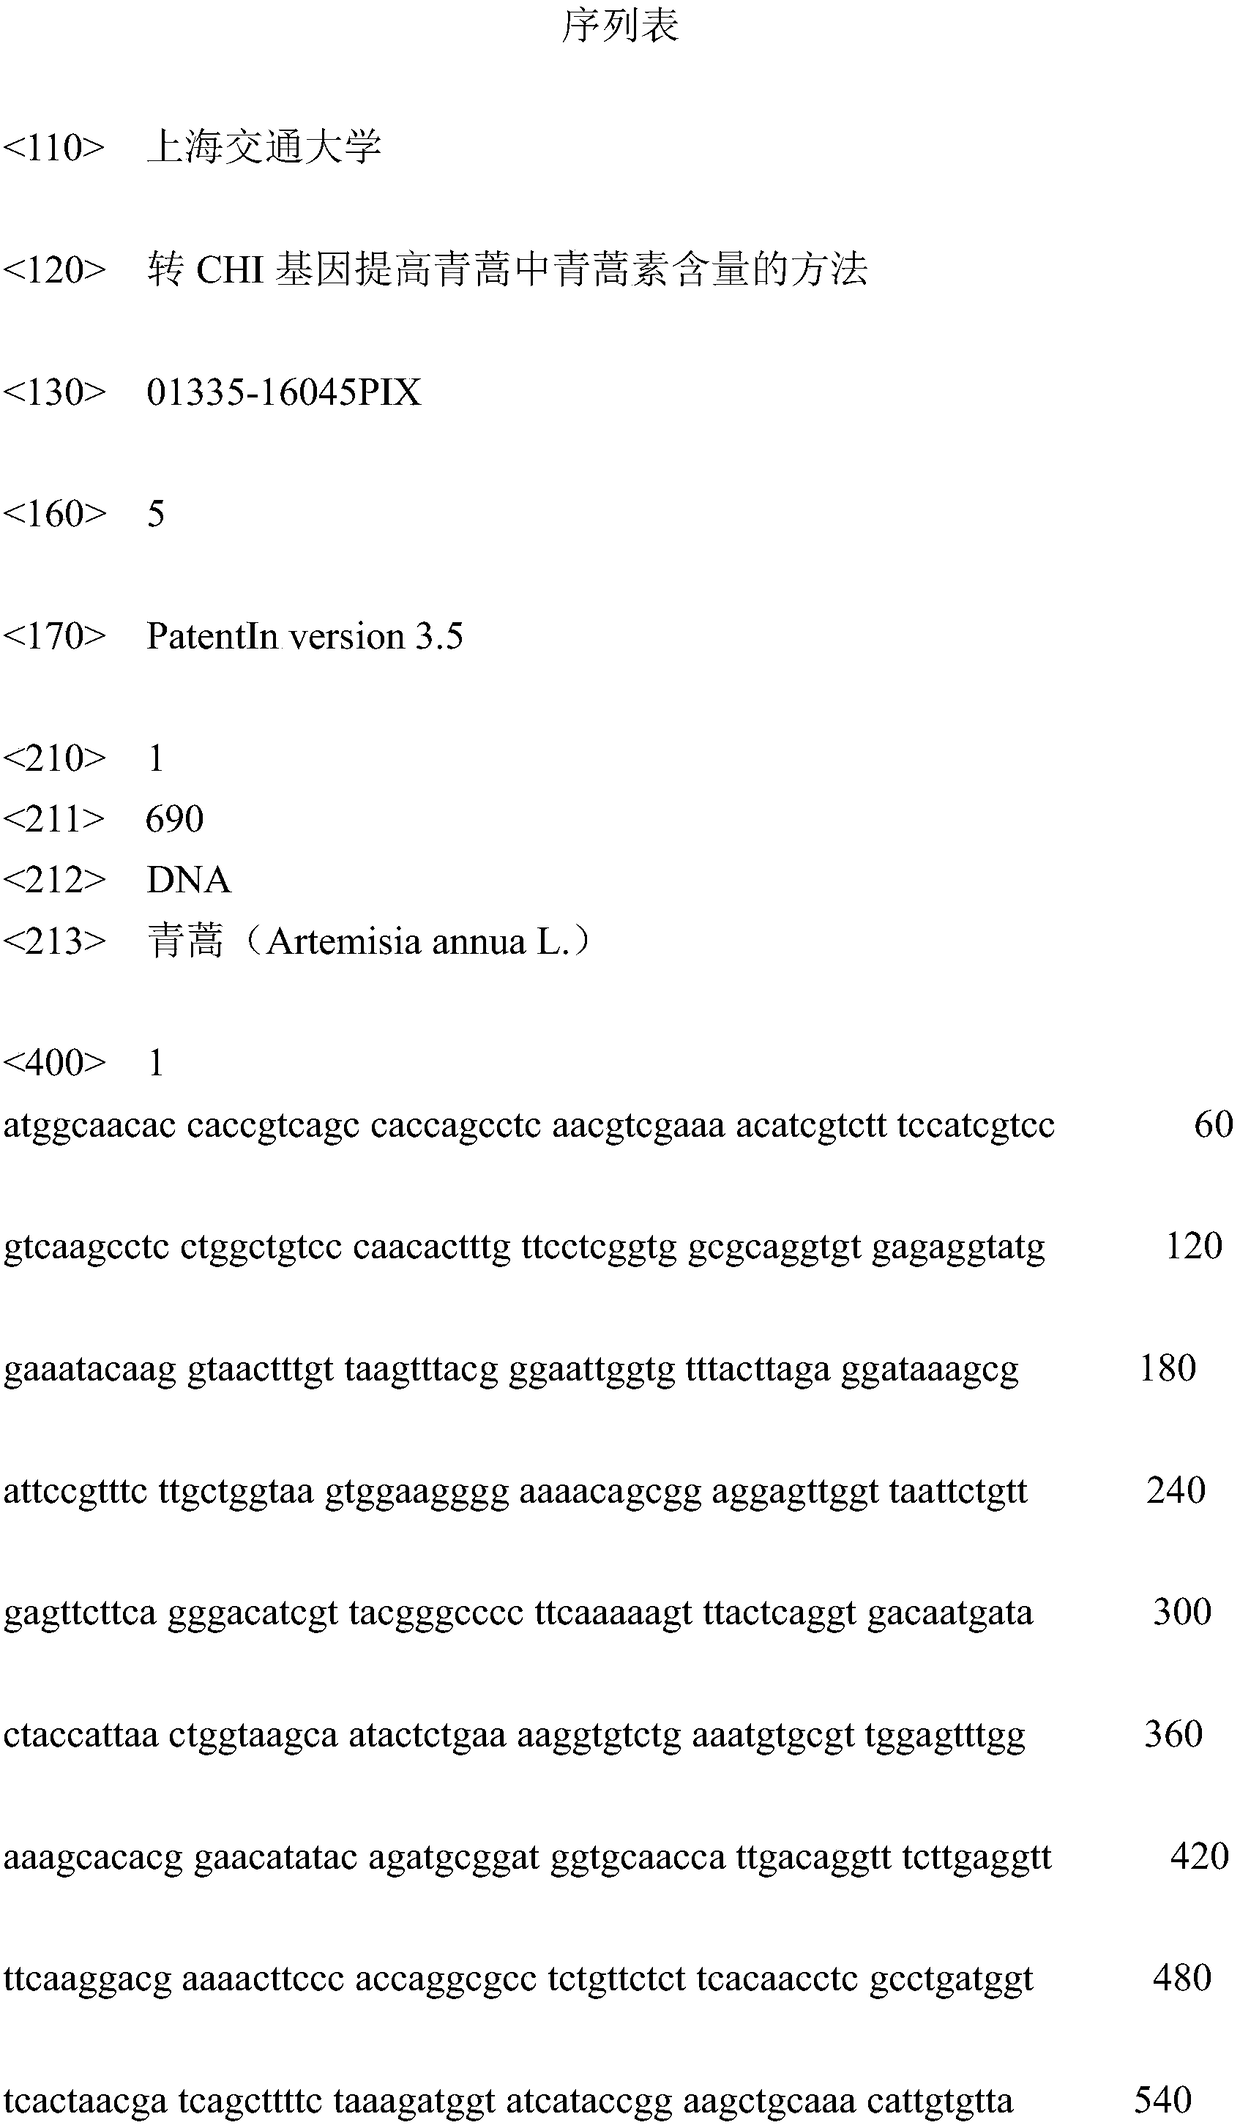 Method for increasing artemisinin content in Artemisia annua by transgenic chi gene